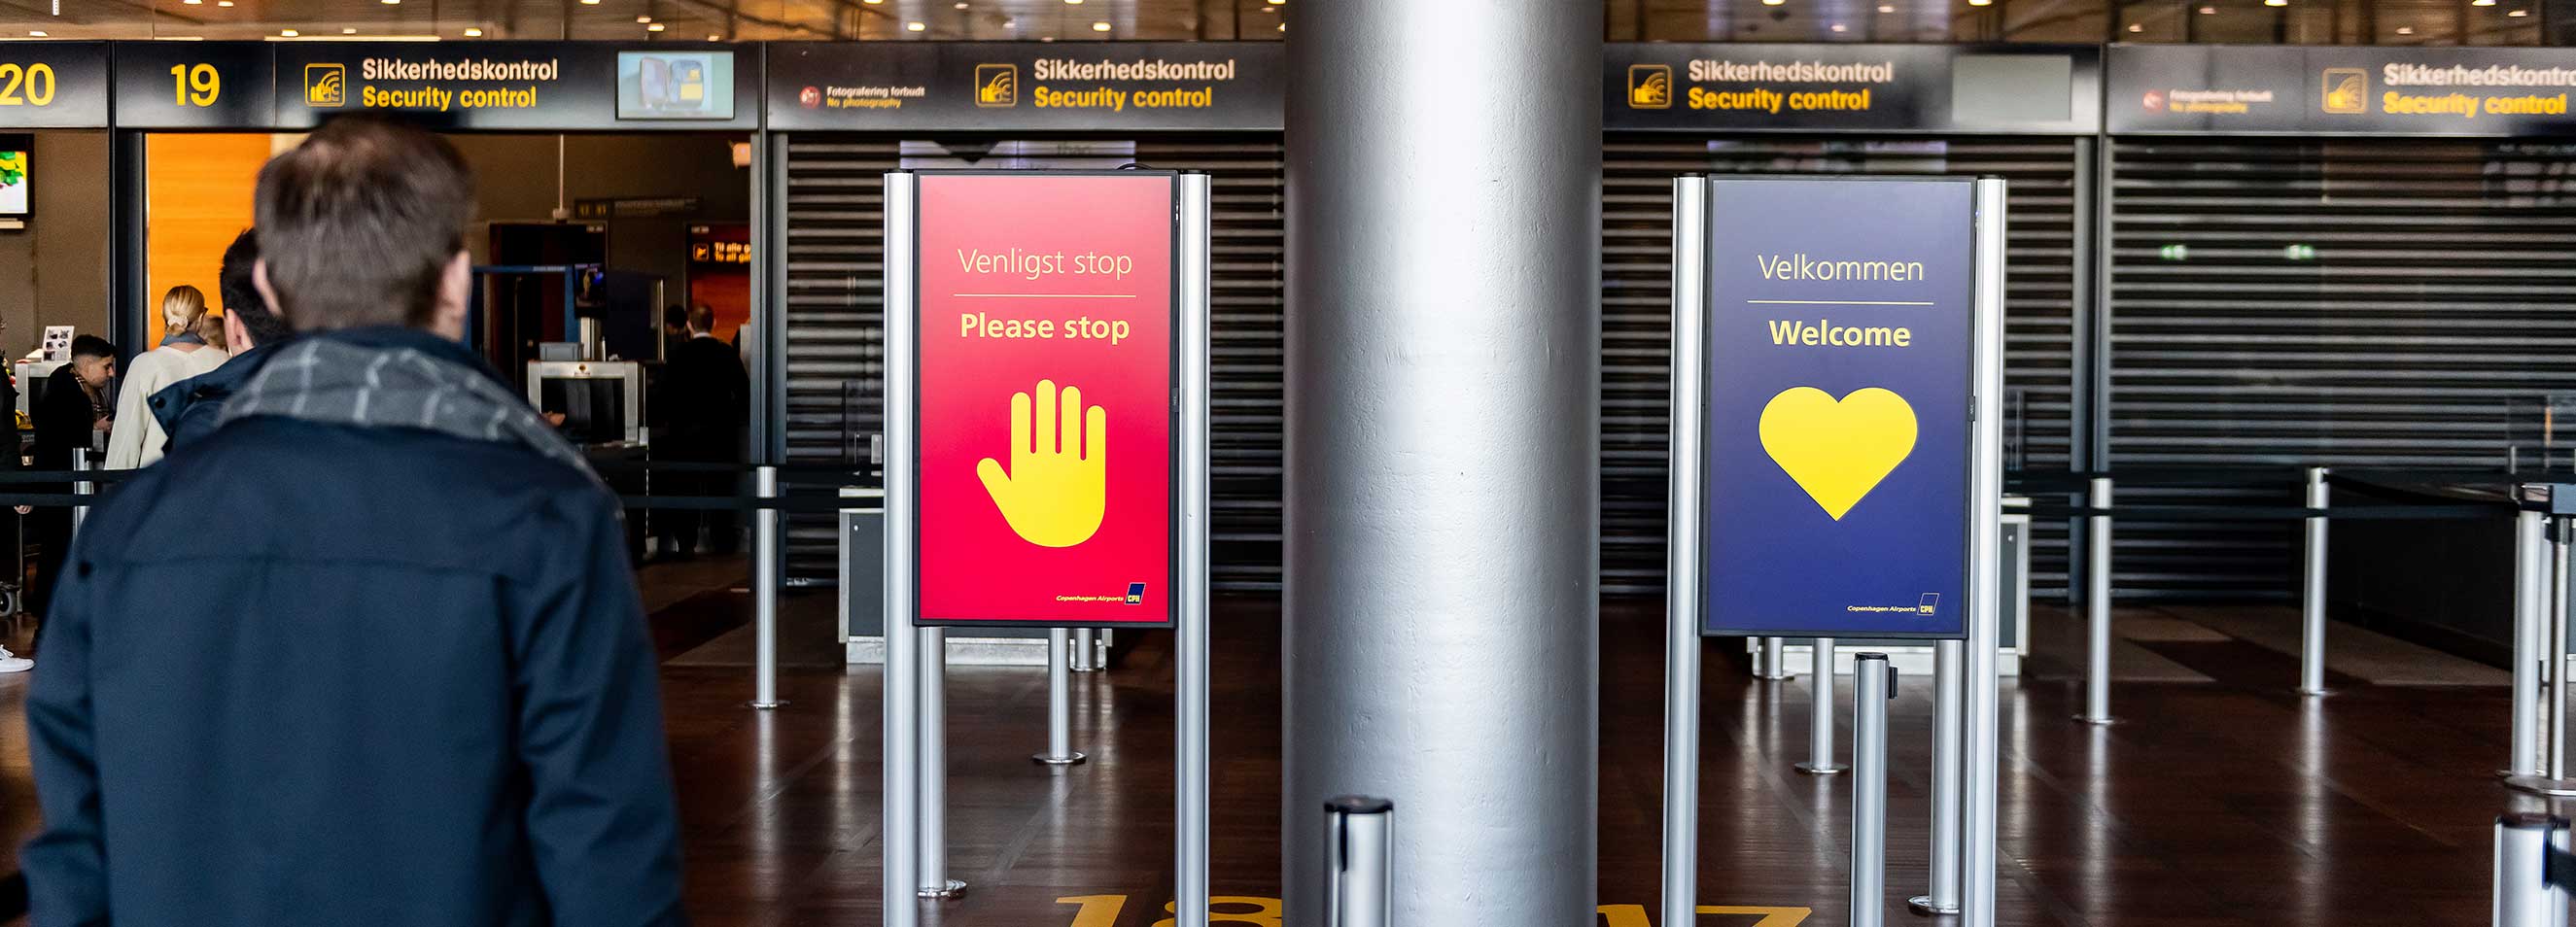 zwei Infobildschirme montiert an Gurtpfosten am Flughafen